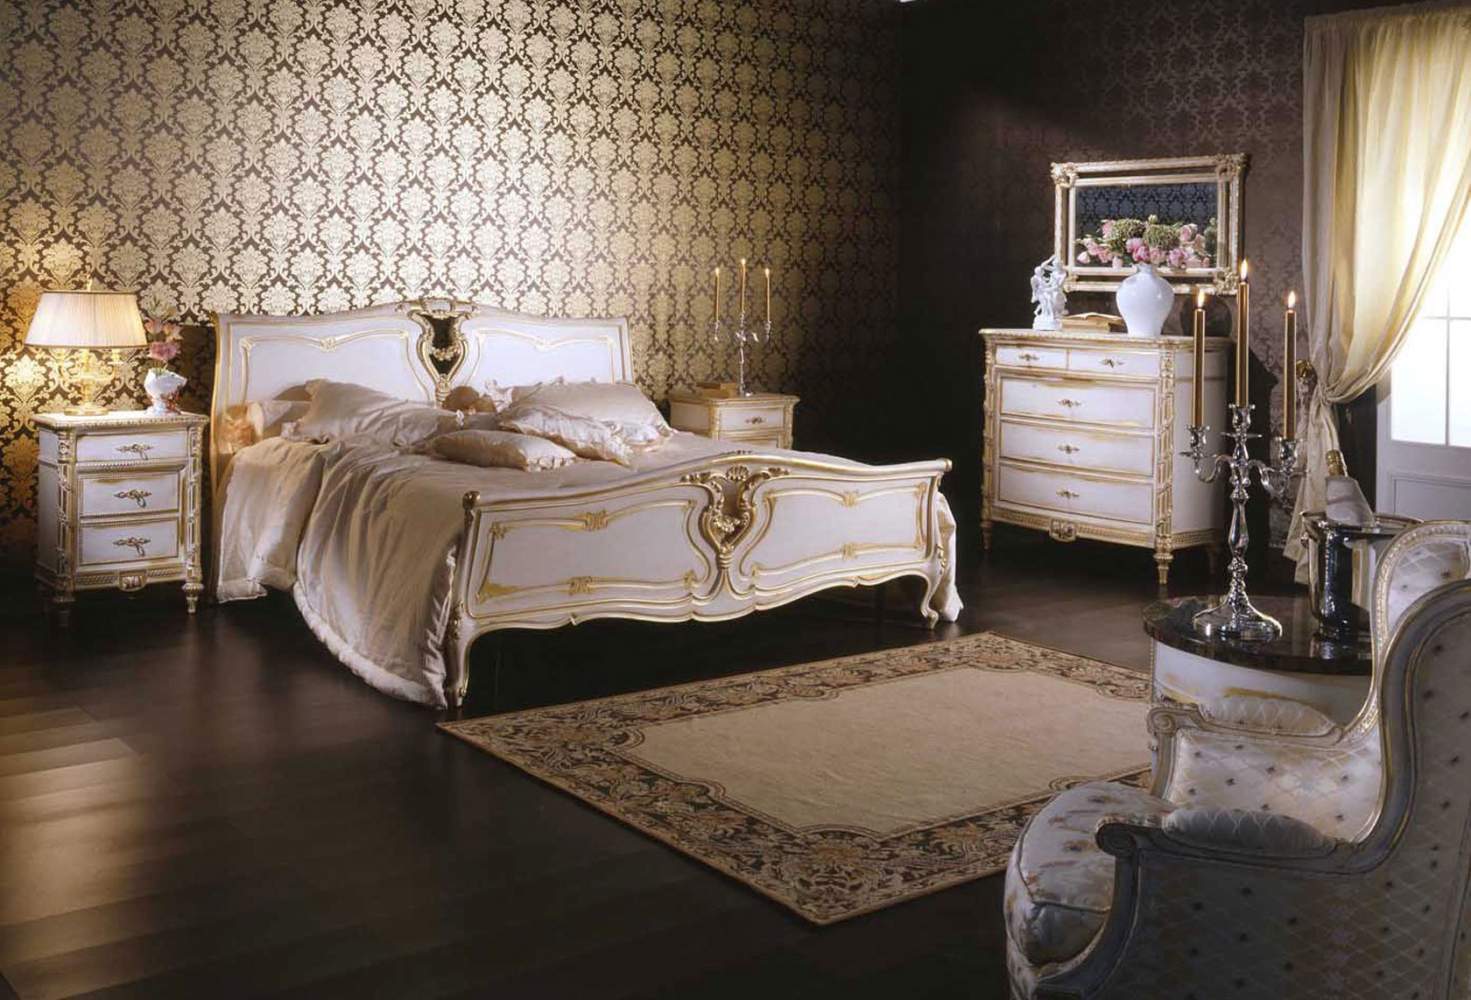 Camera da letto classica in stile Luigi XVI, letto in legno, comodini, comò con intagli